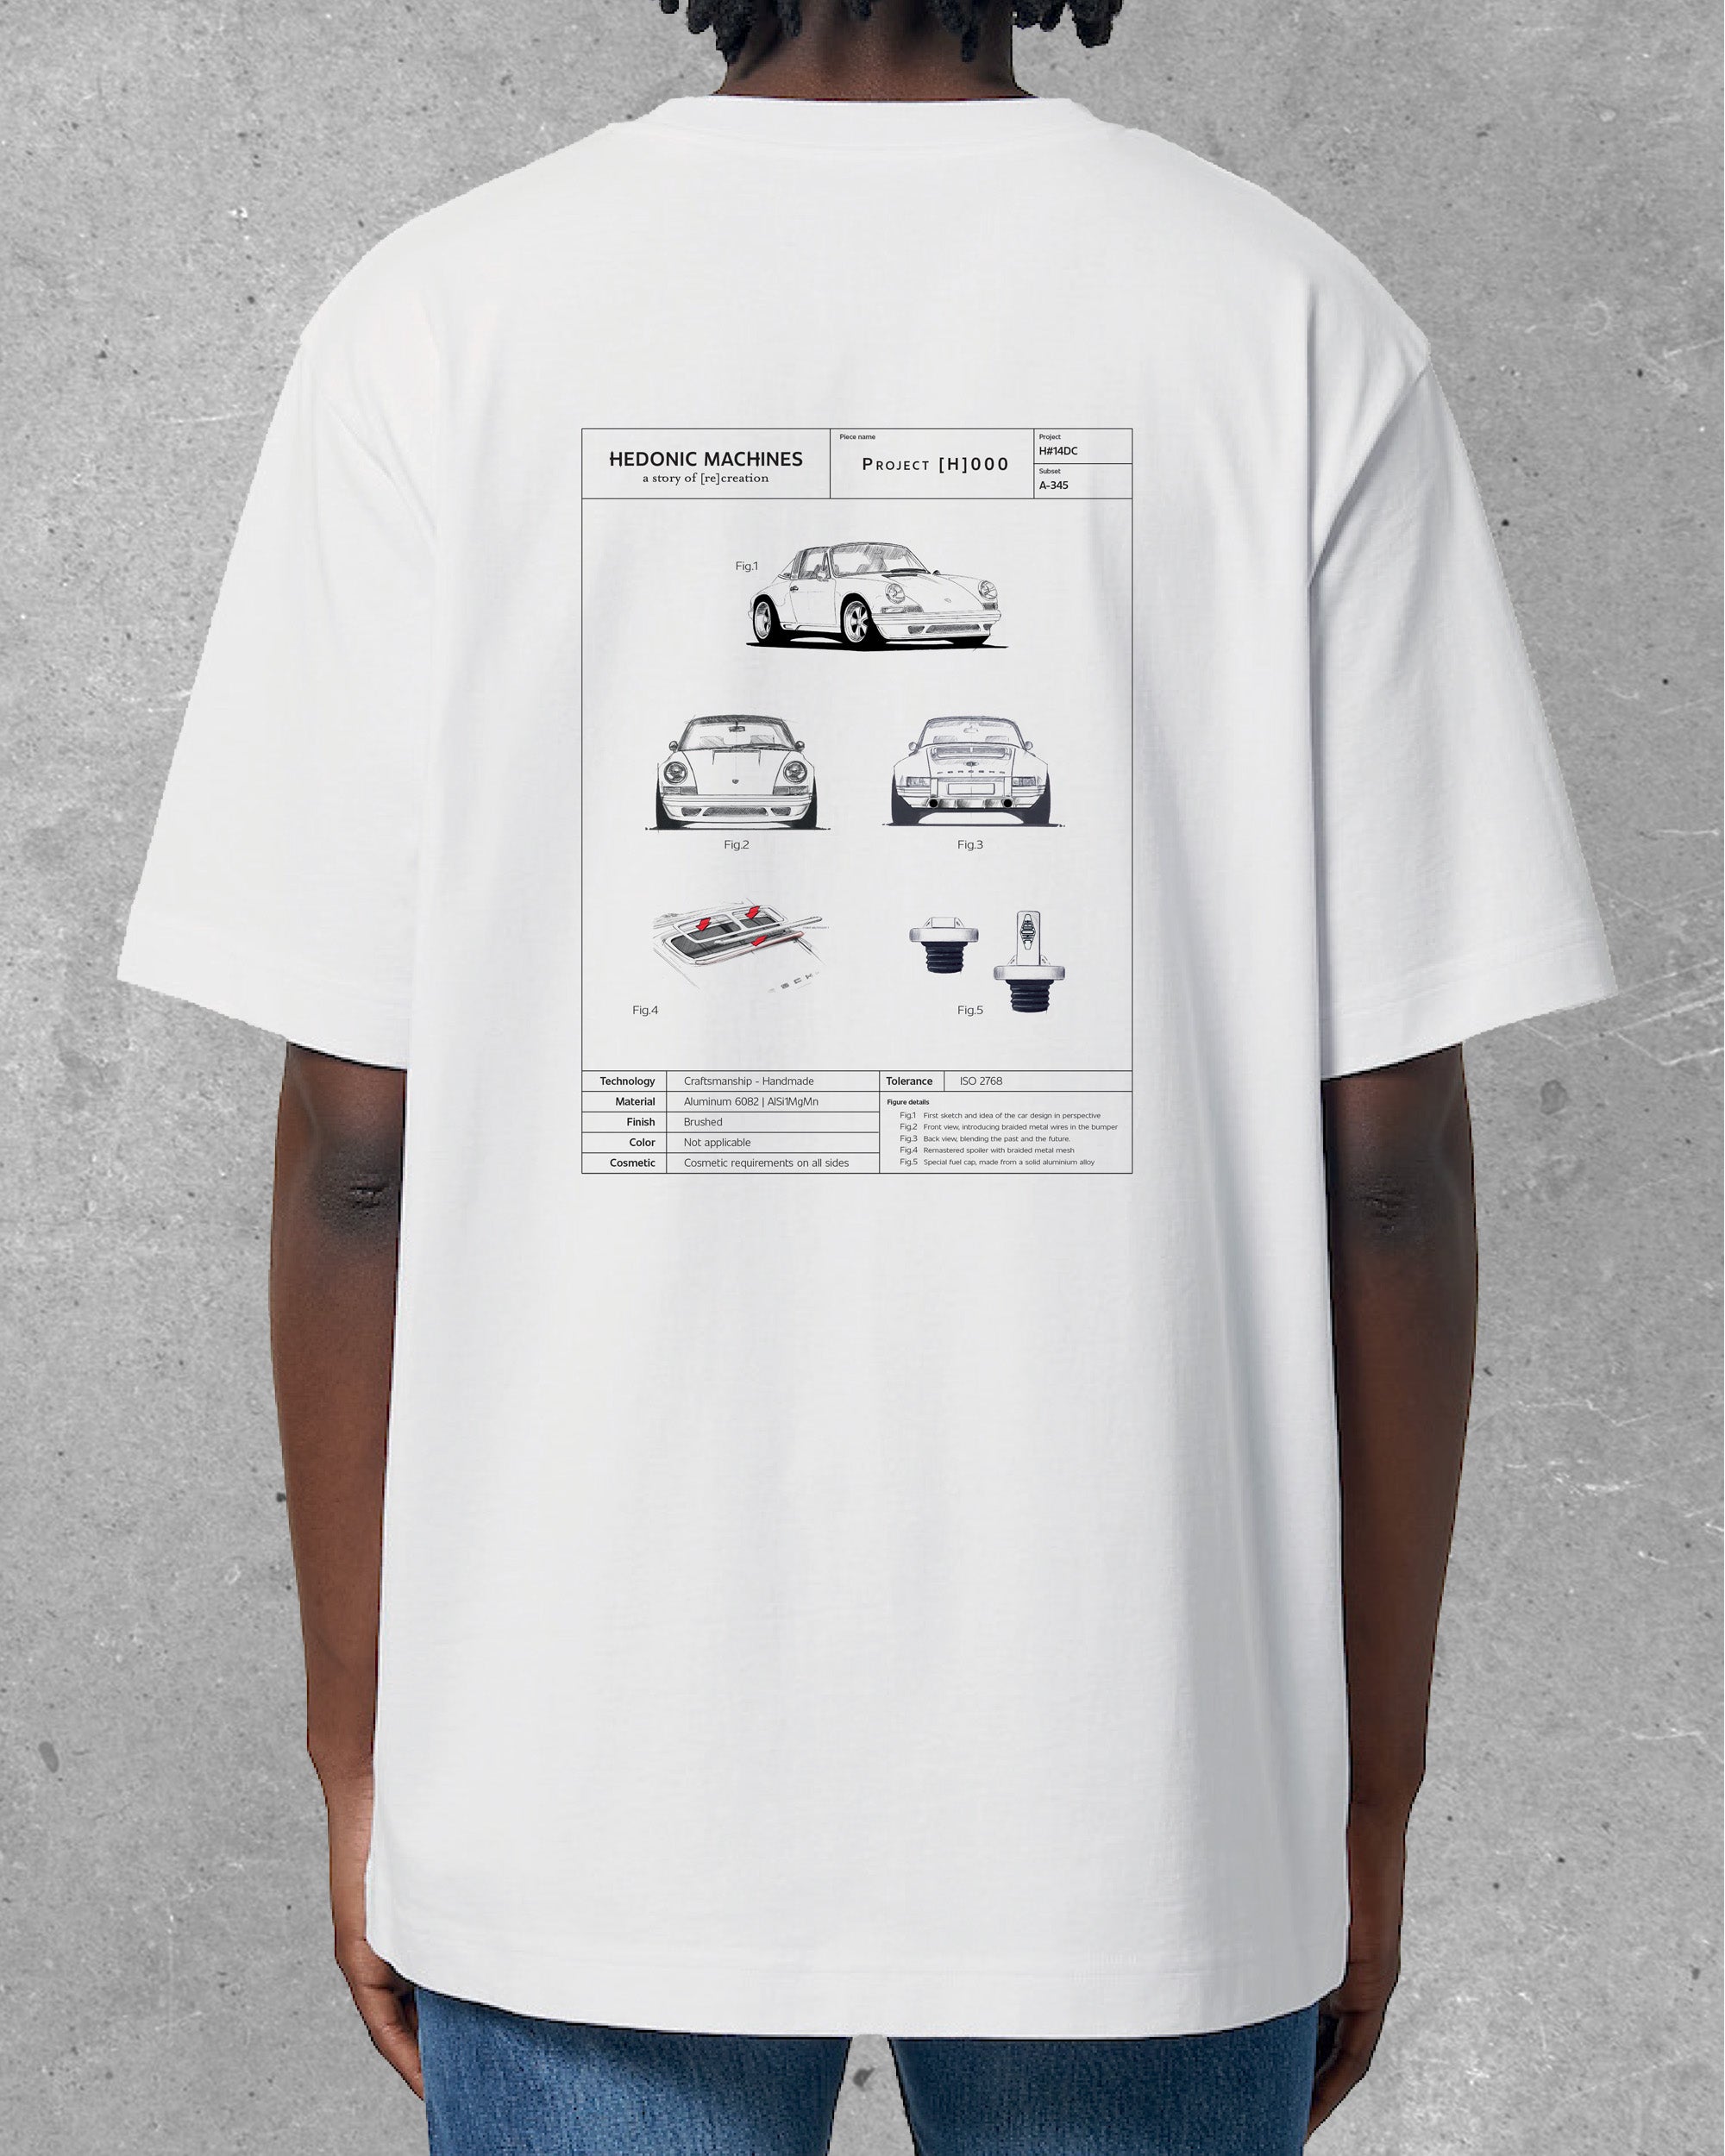 T-Shirt blanc - [H]000 Fiche technique